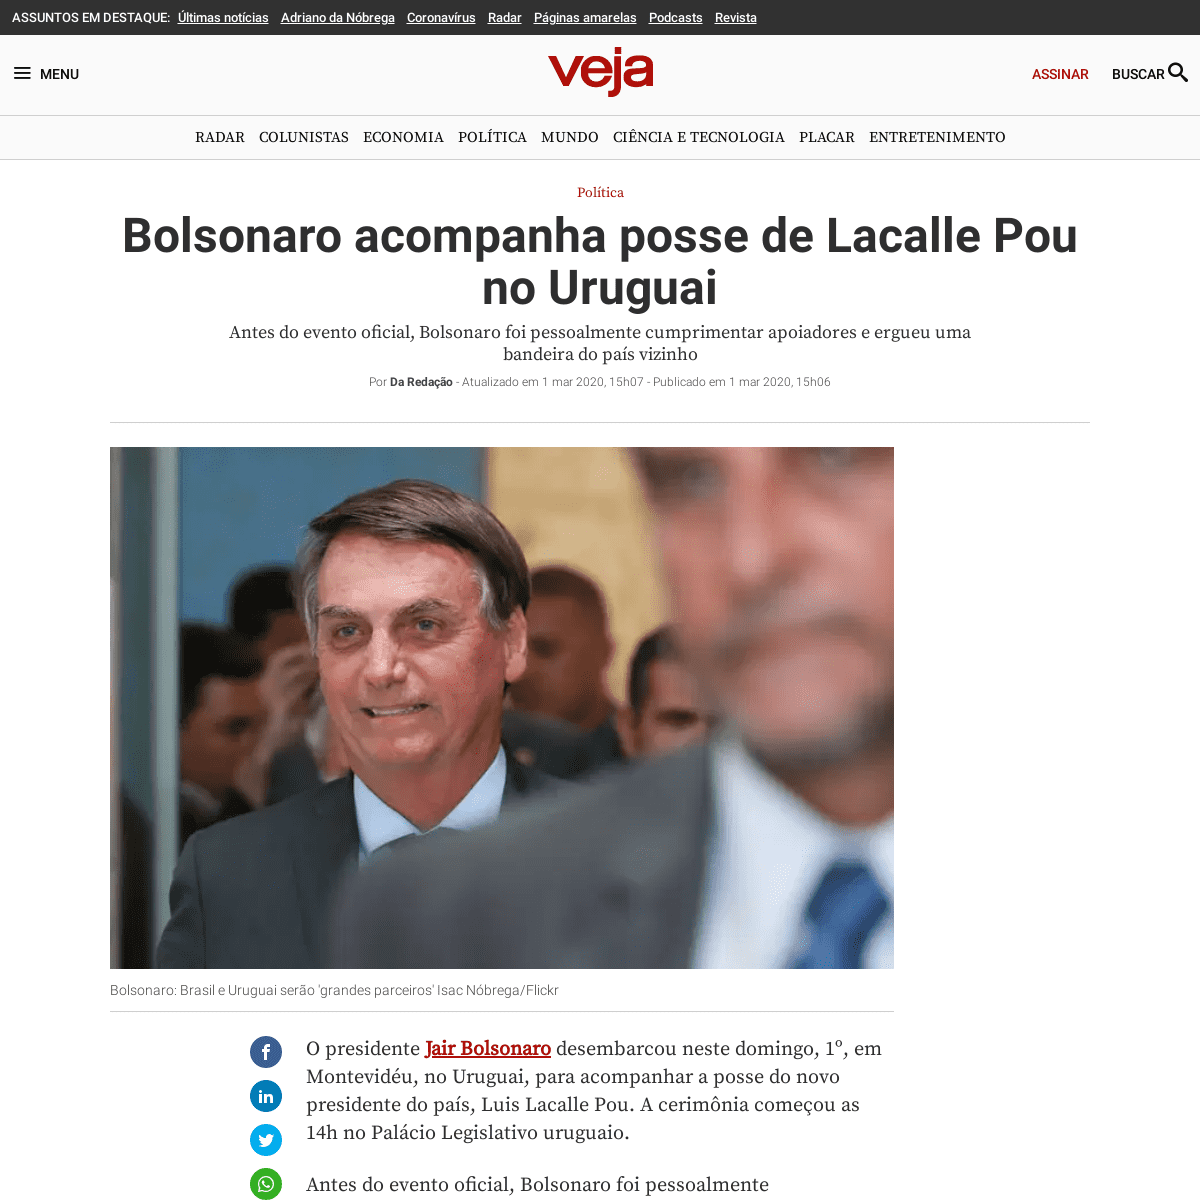 A complete backup of veja.abril.com.br/politica/bolsonaro-acompanha-posse-de-lacalle-pou-no-uruguai/